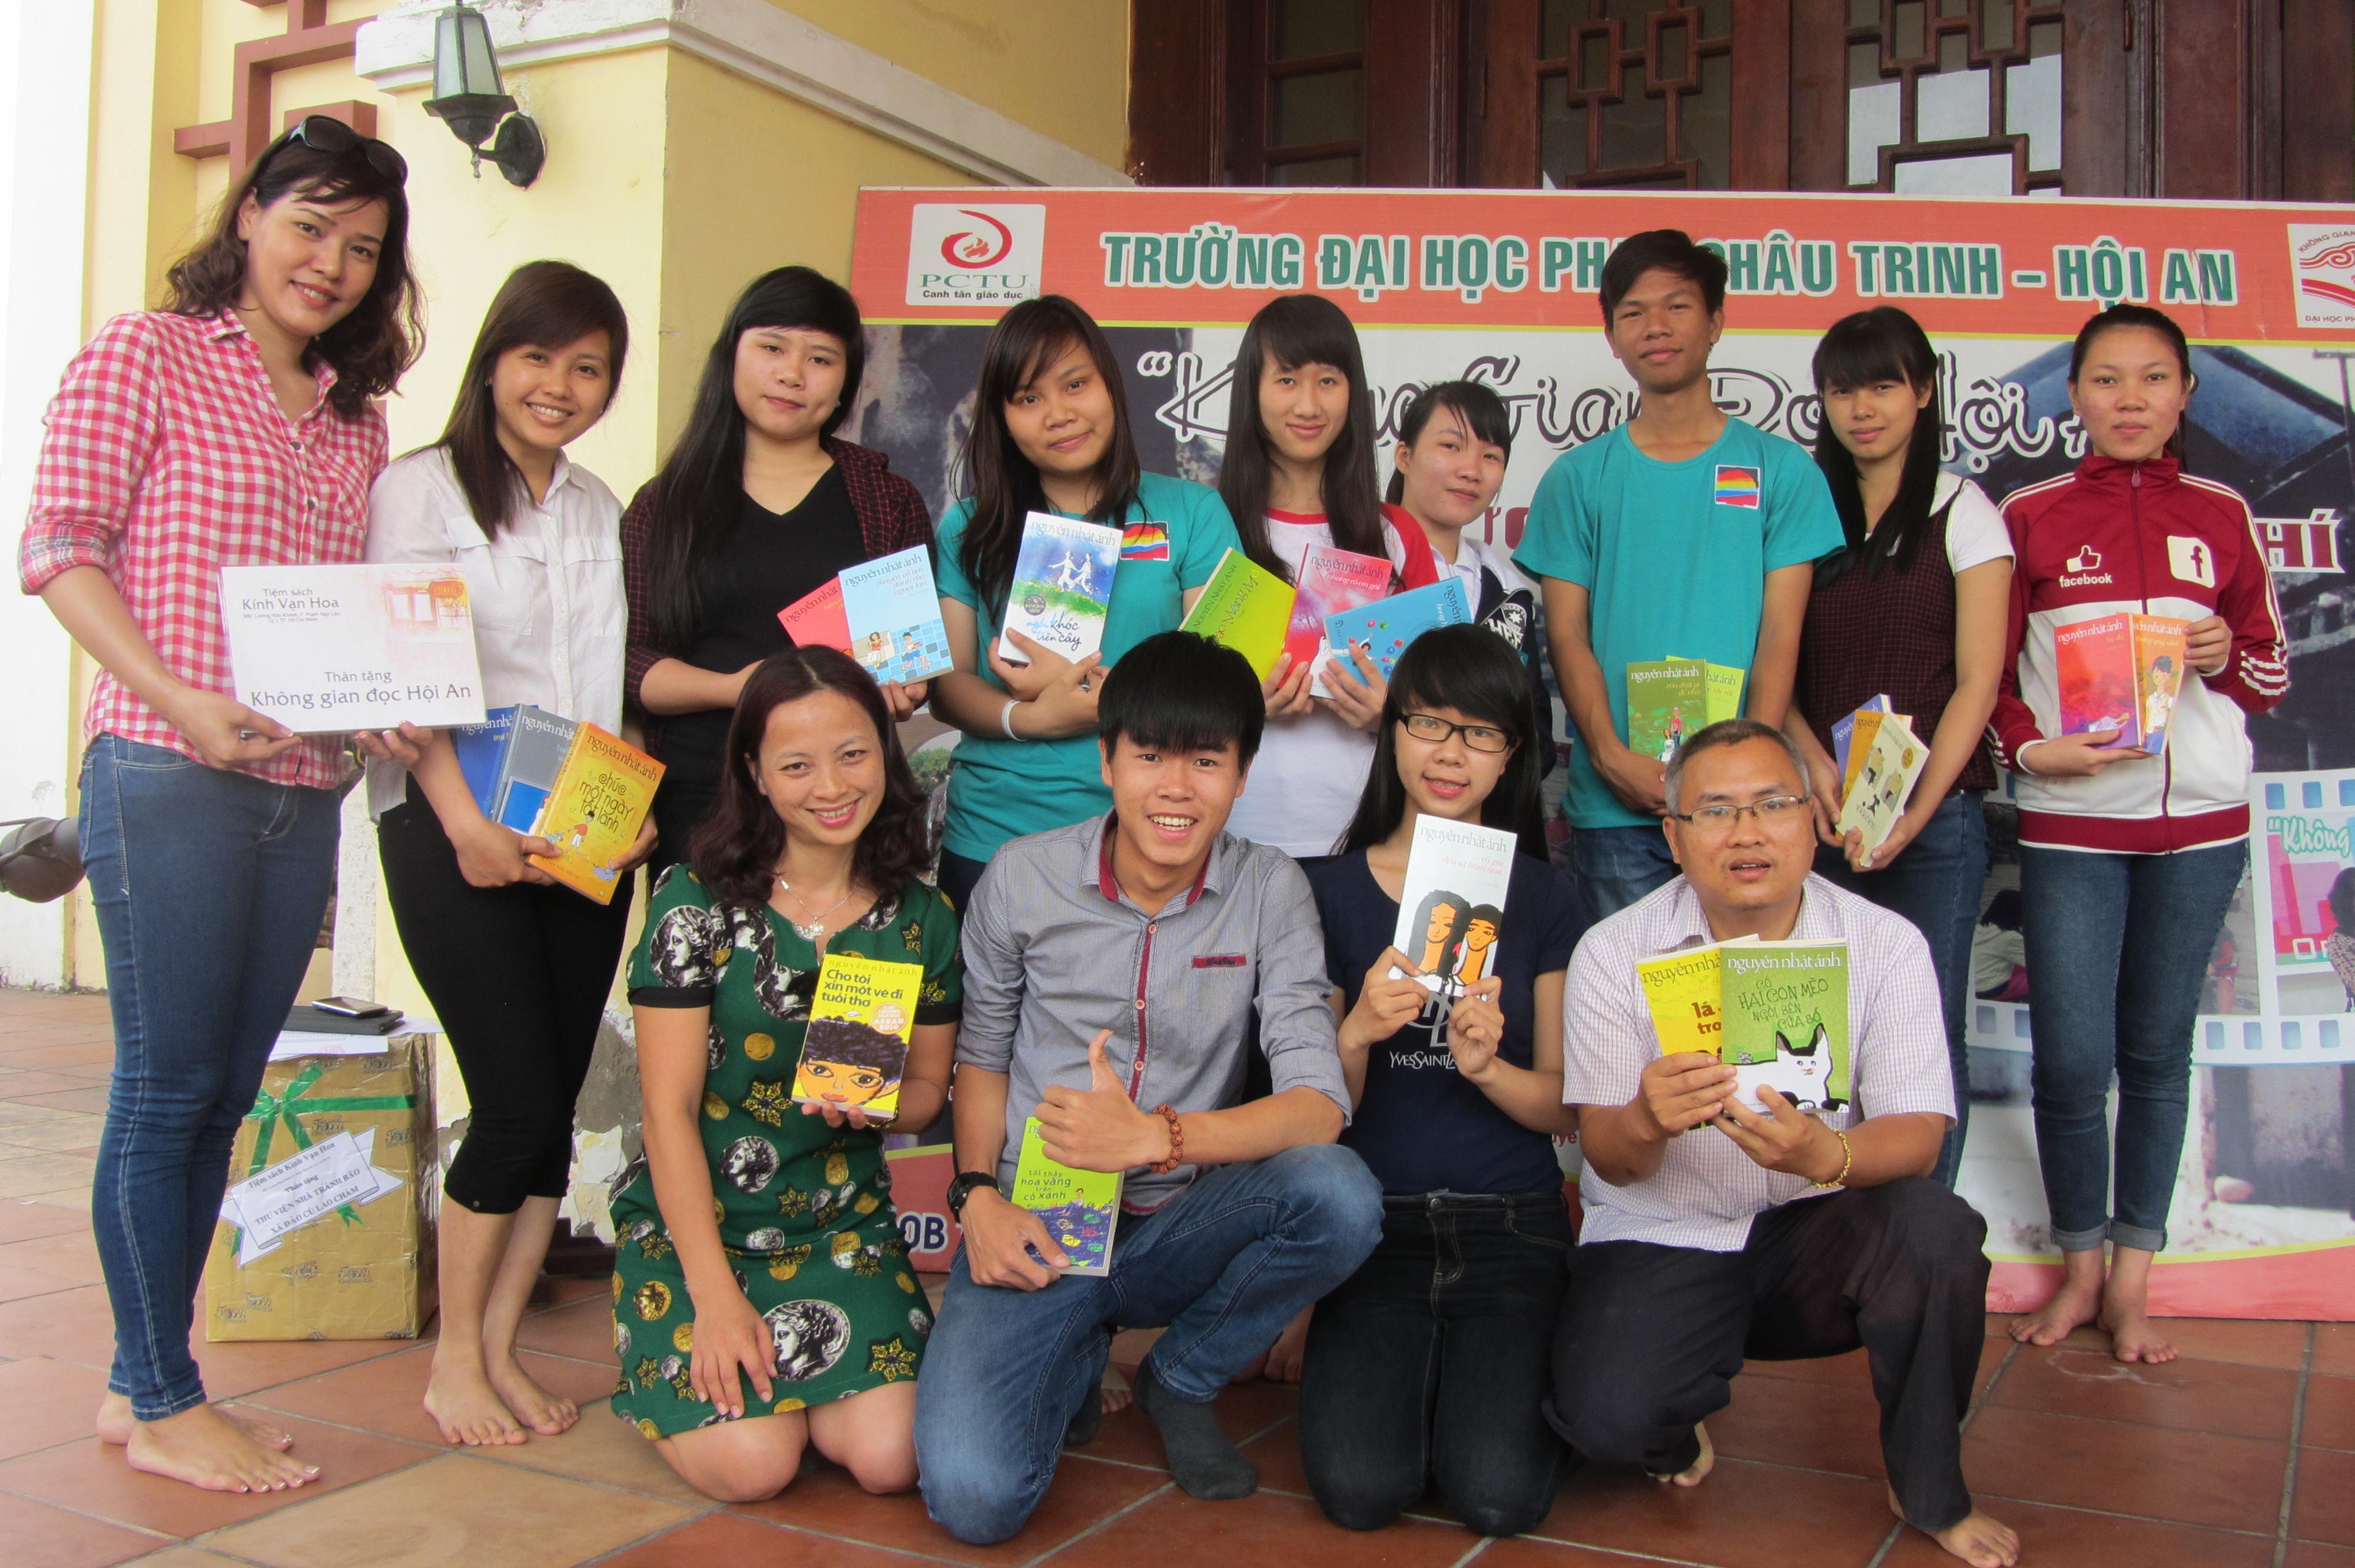 Nhà văn Nguyễn Nhật Ánh tặng sách đến Không gian đọc Hội An